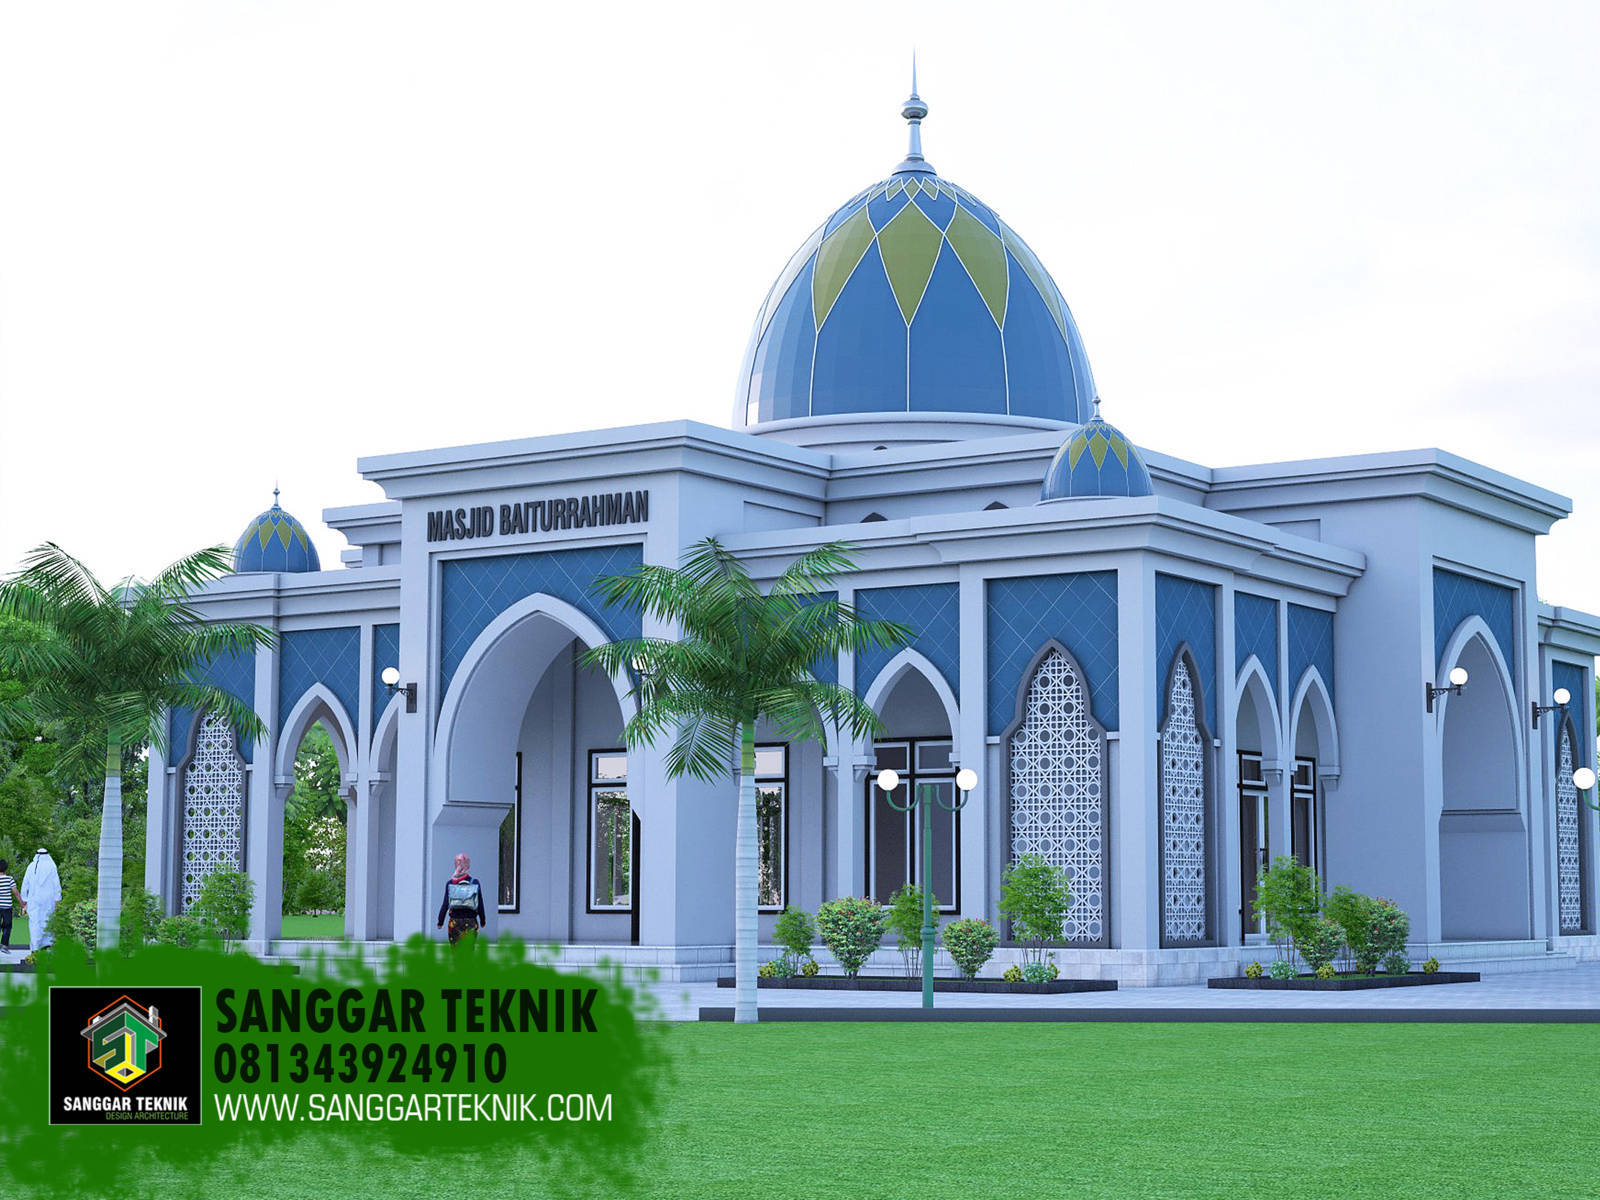 54 Ide Cantik Desain Teras Masjid Minimalis Paling Populer di Dunia